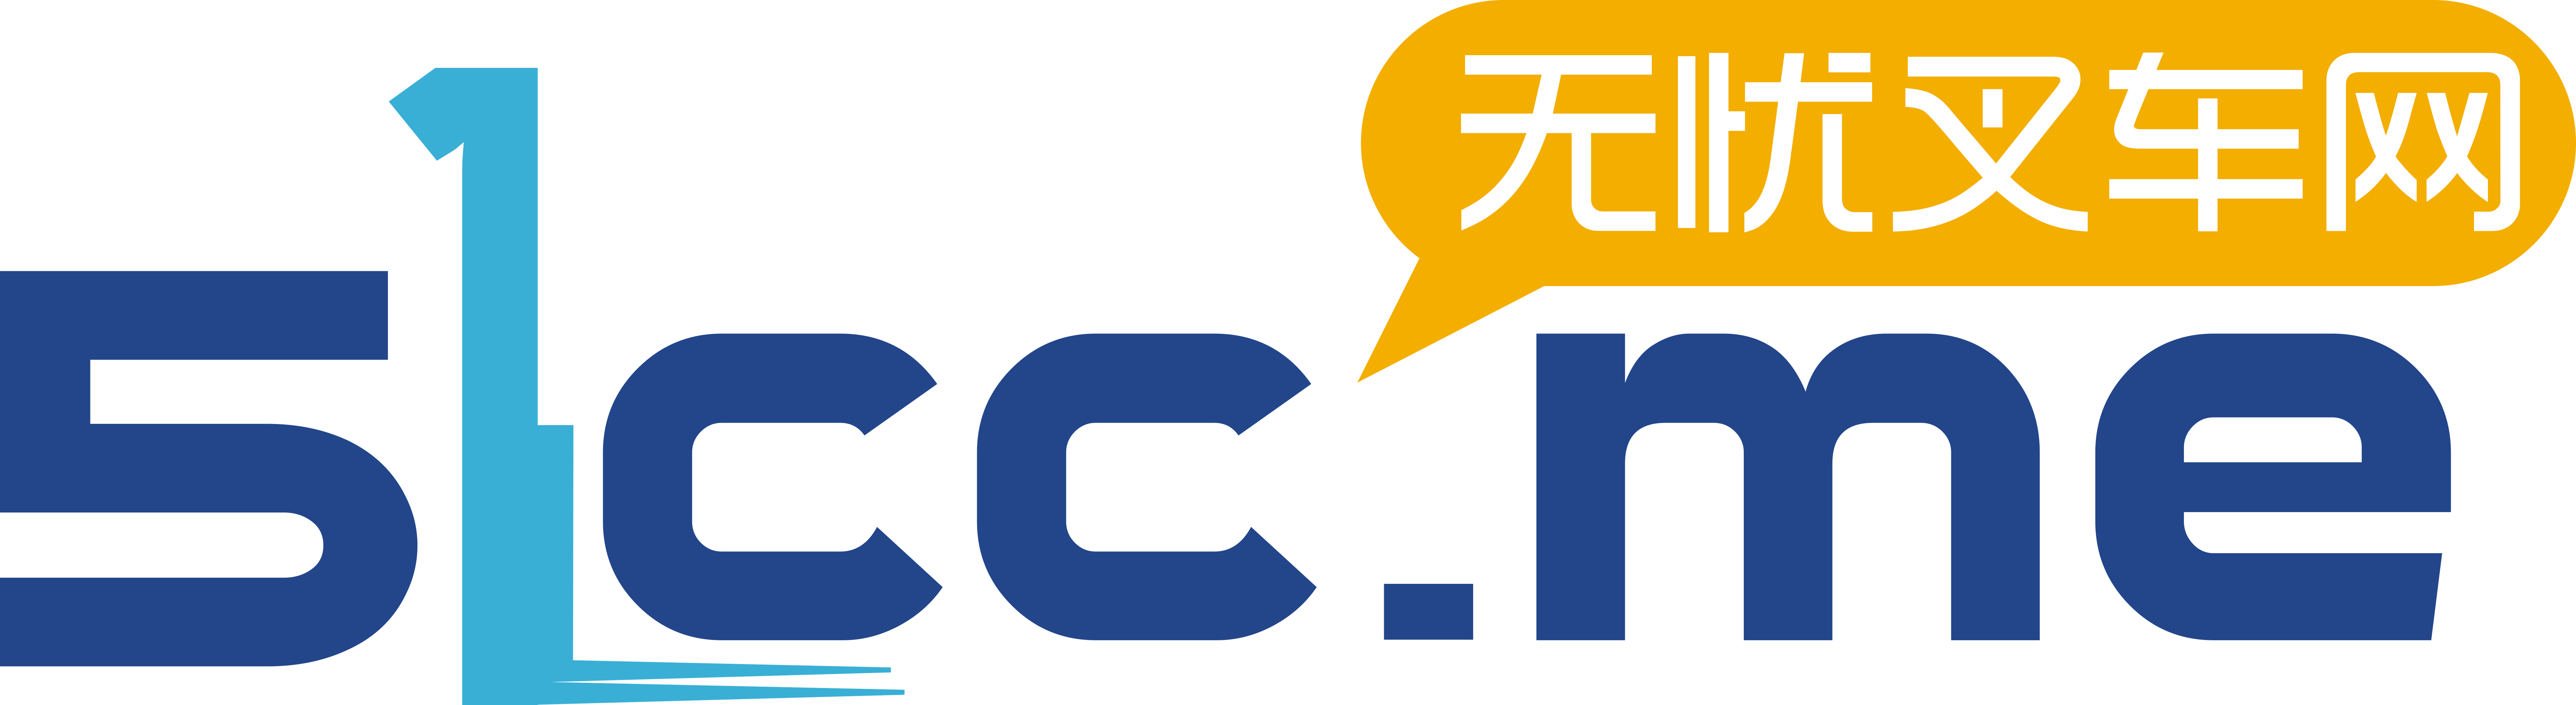 16_Logo_Shanghai 51CC Tech Co., Ltd.